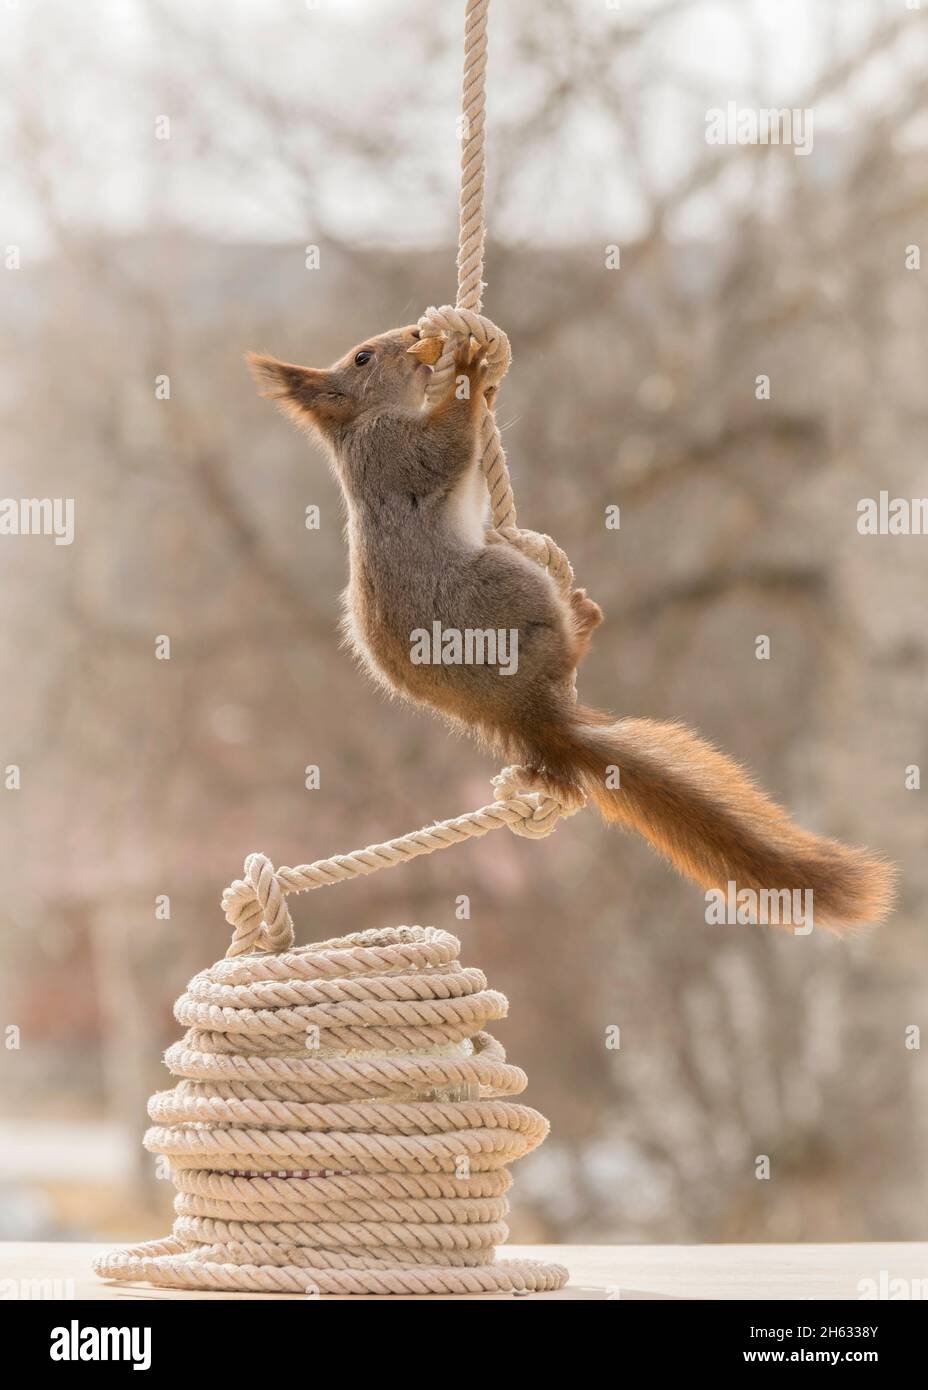 Nahaufnahme des roten Eichhörnchens, das in einem Seil mit Knoten klettert Stockfoto